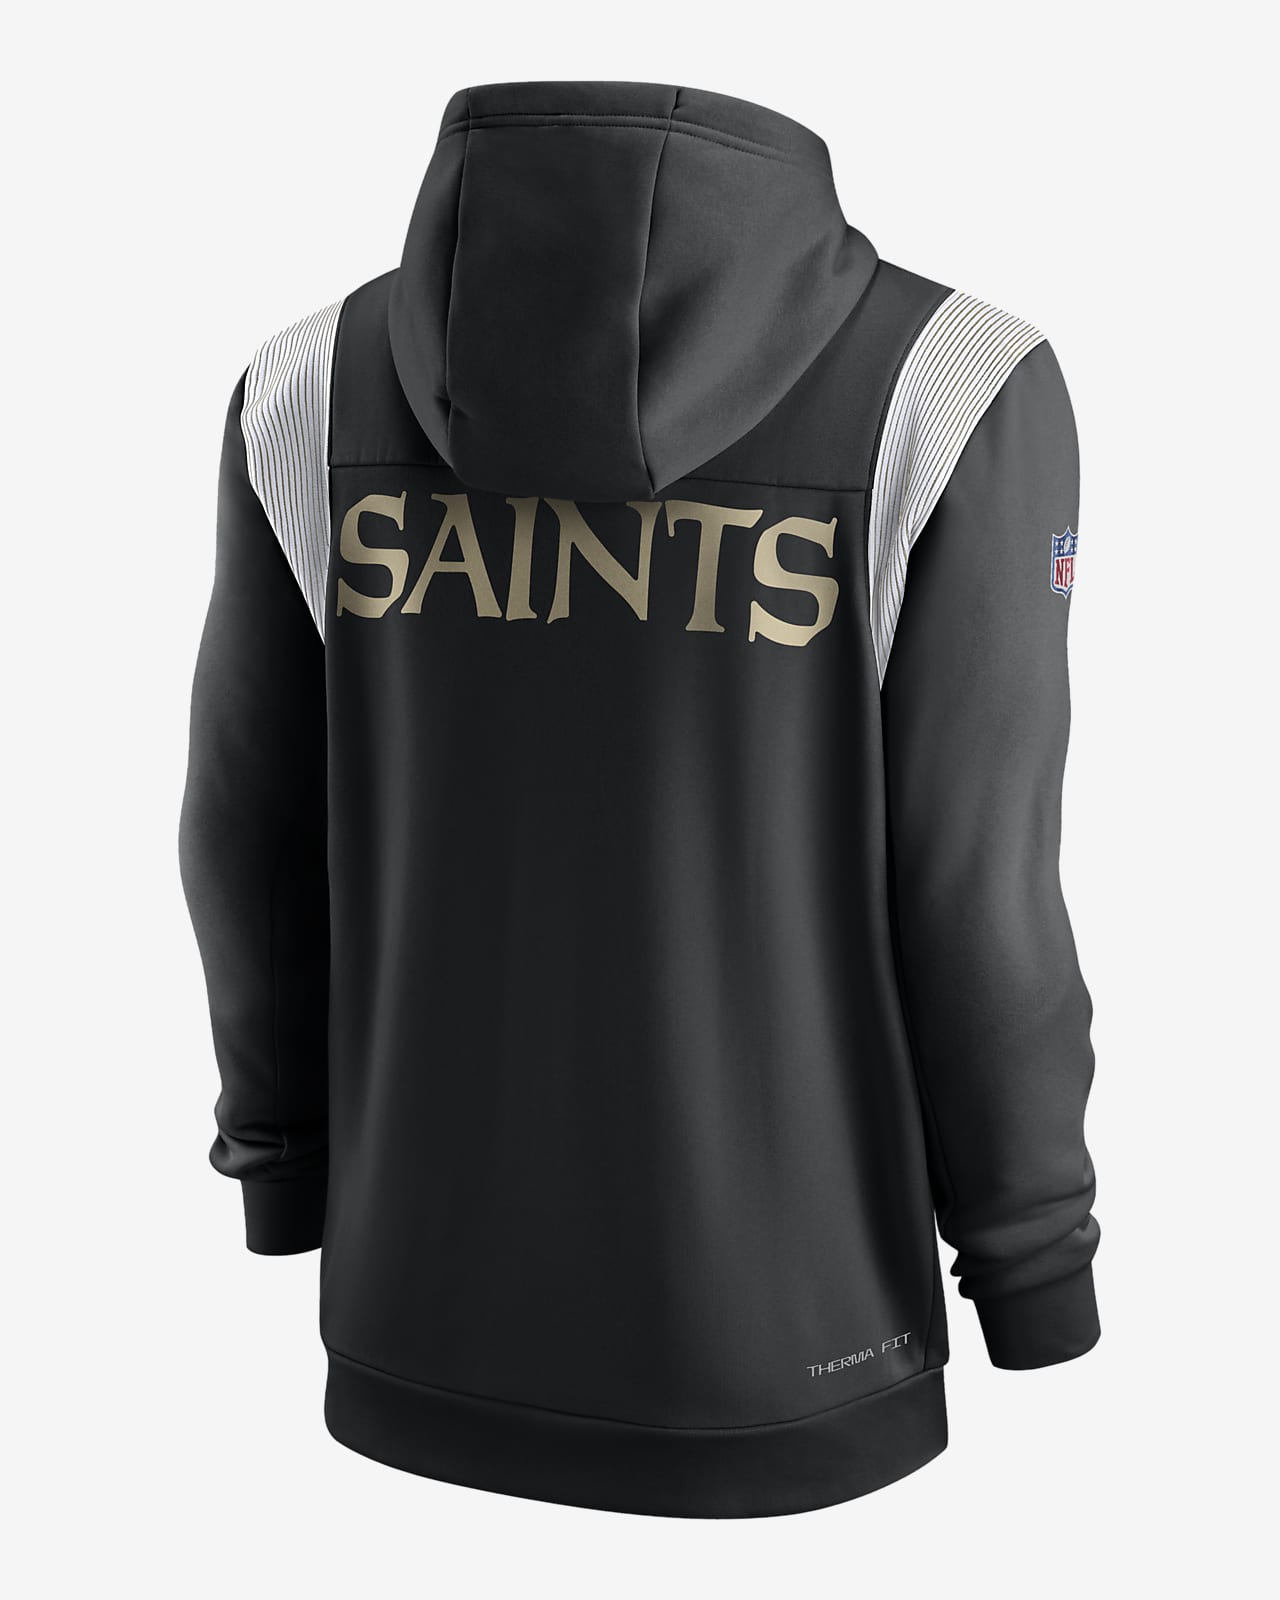 Men's Nike Black New Orleans Saints Performance Sideline Lockup Full-Zip Hoodie Size: Large